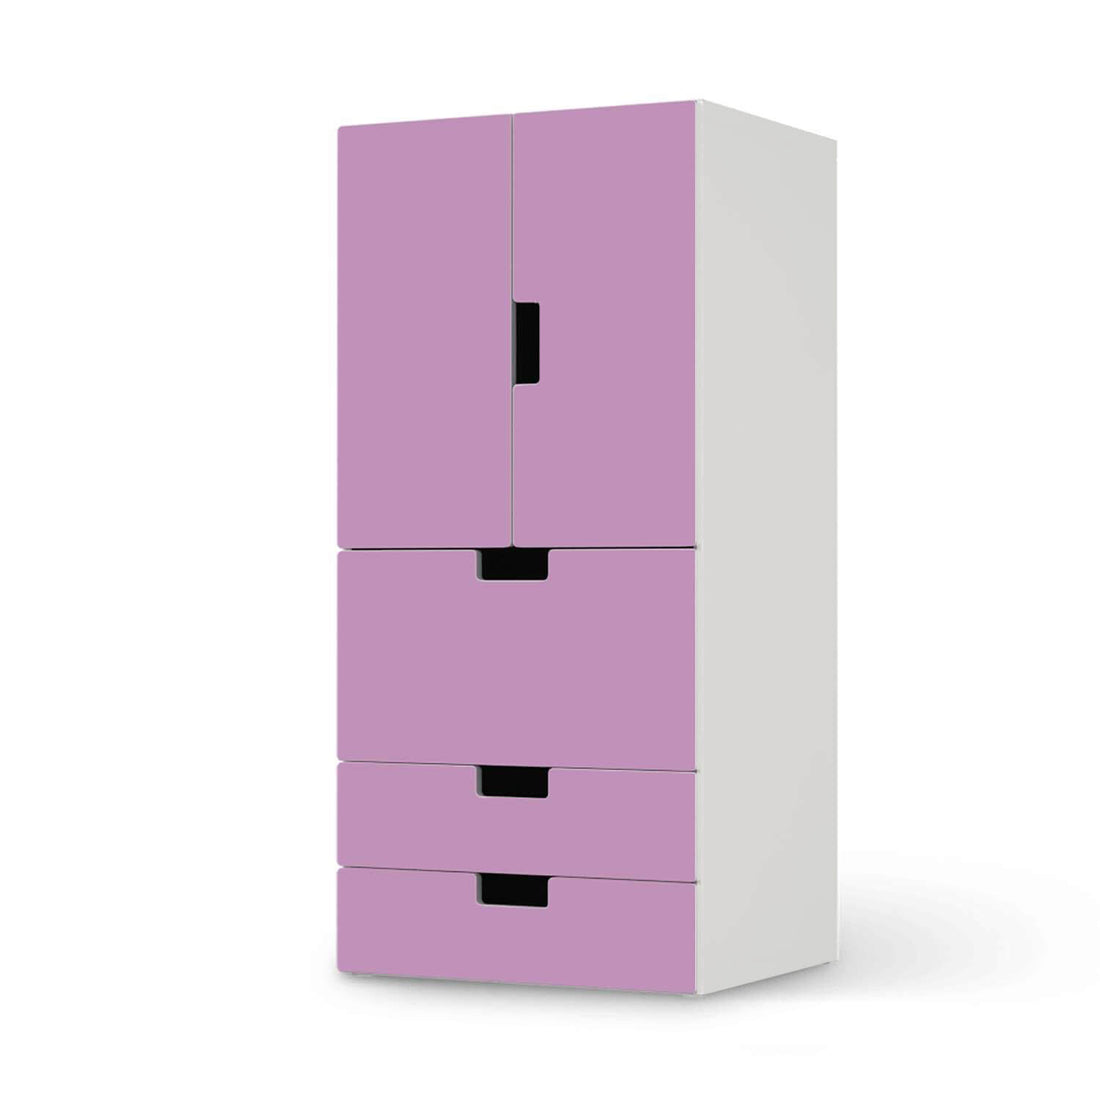 Möbelfolie Flieder Light - IKEA Stuva kombiniert - 3 Schubladen und 2 kleine Türen  - weiss